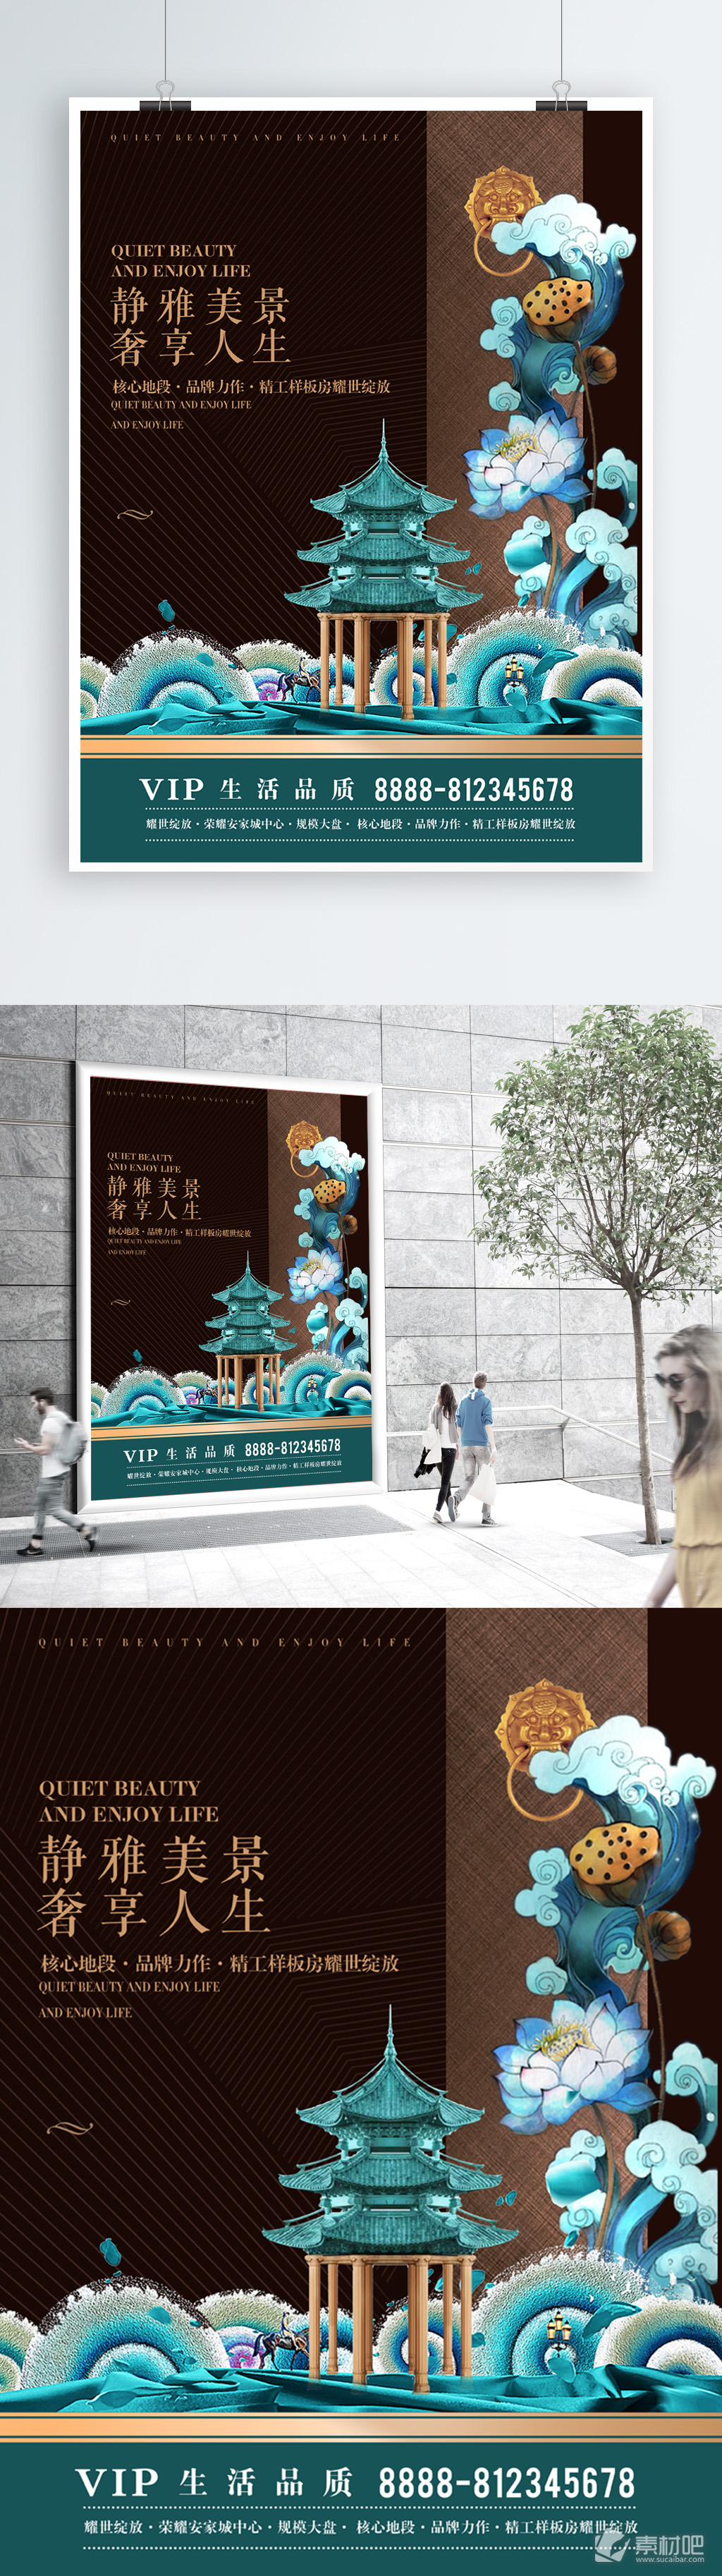 高质感中国风地产商业海报